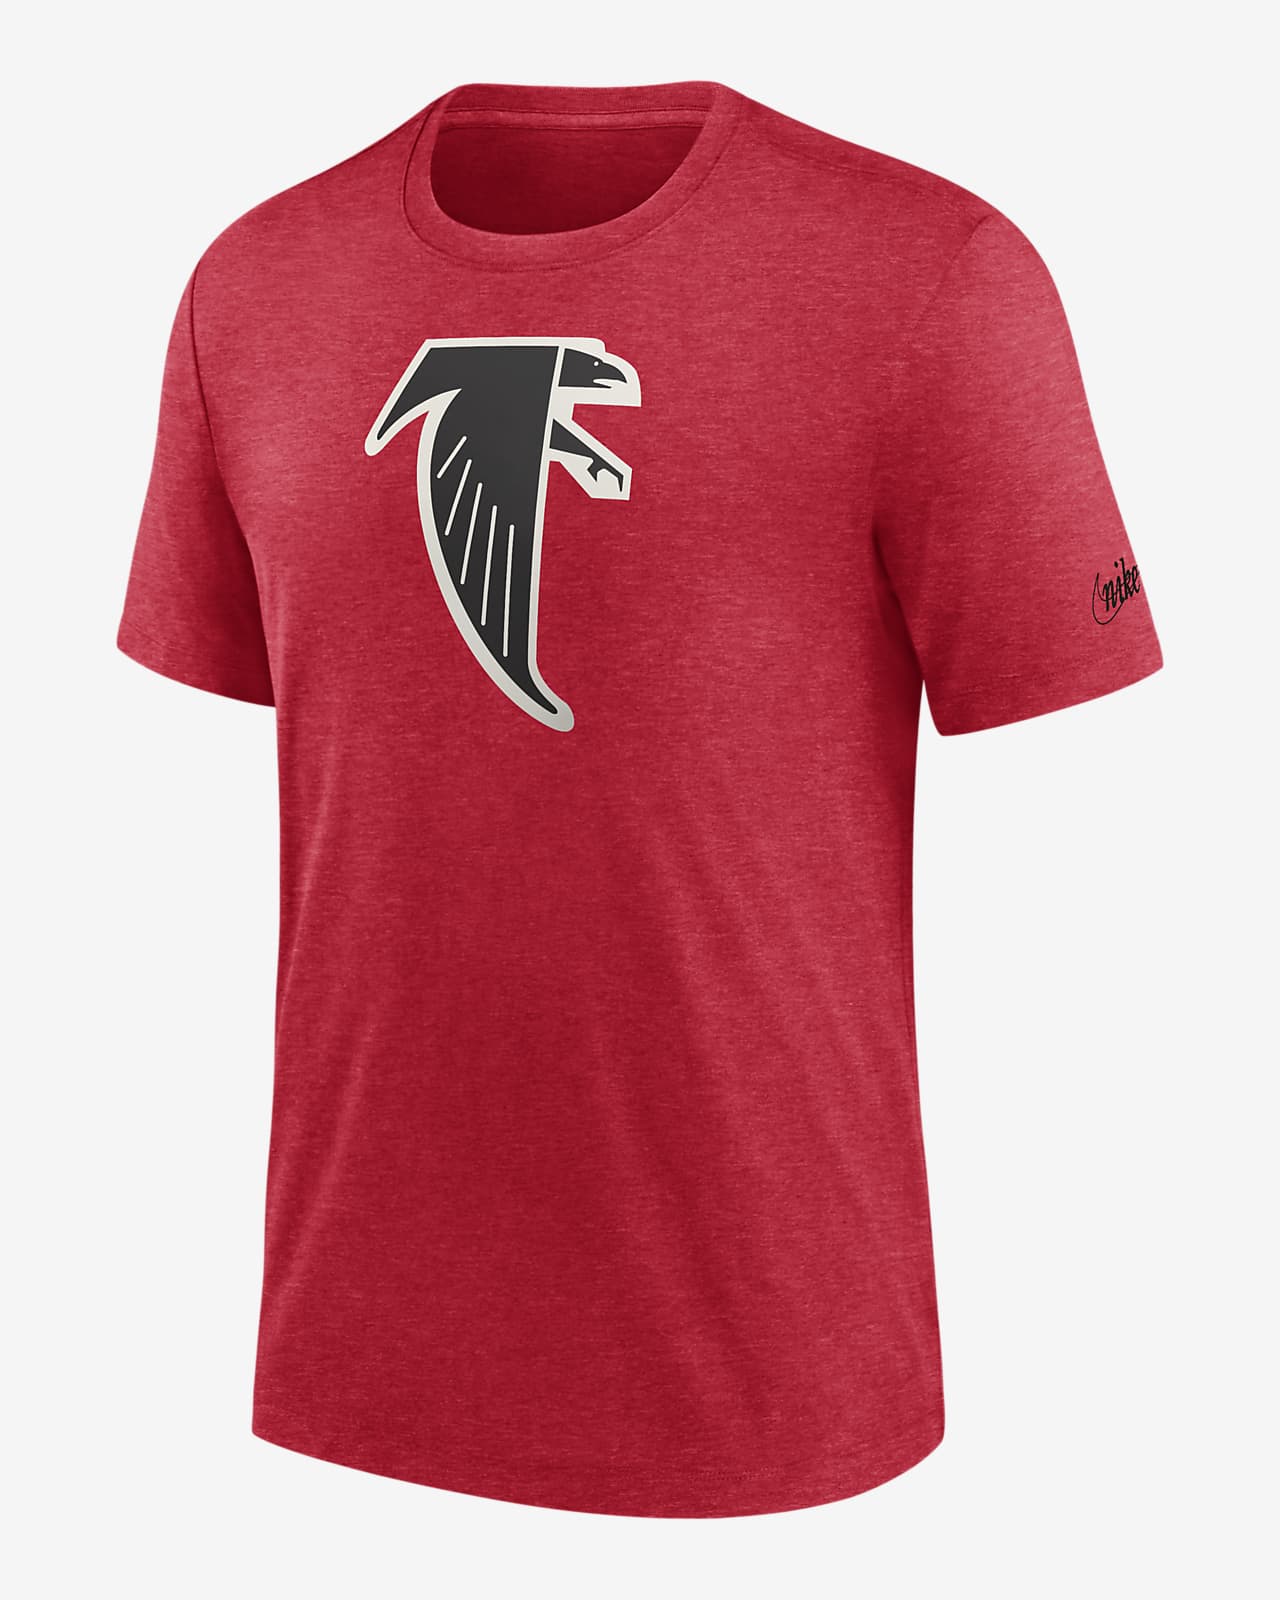 Playera Nike de la NFL para hombre Atlanta Falcons Rewind Logo